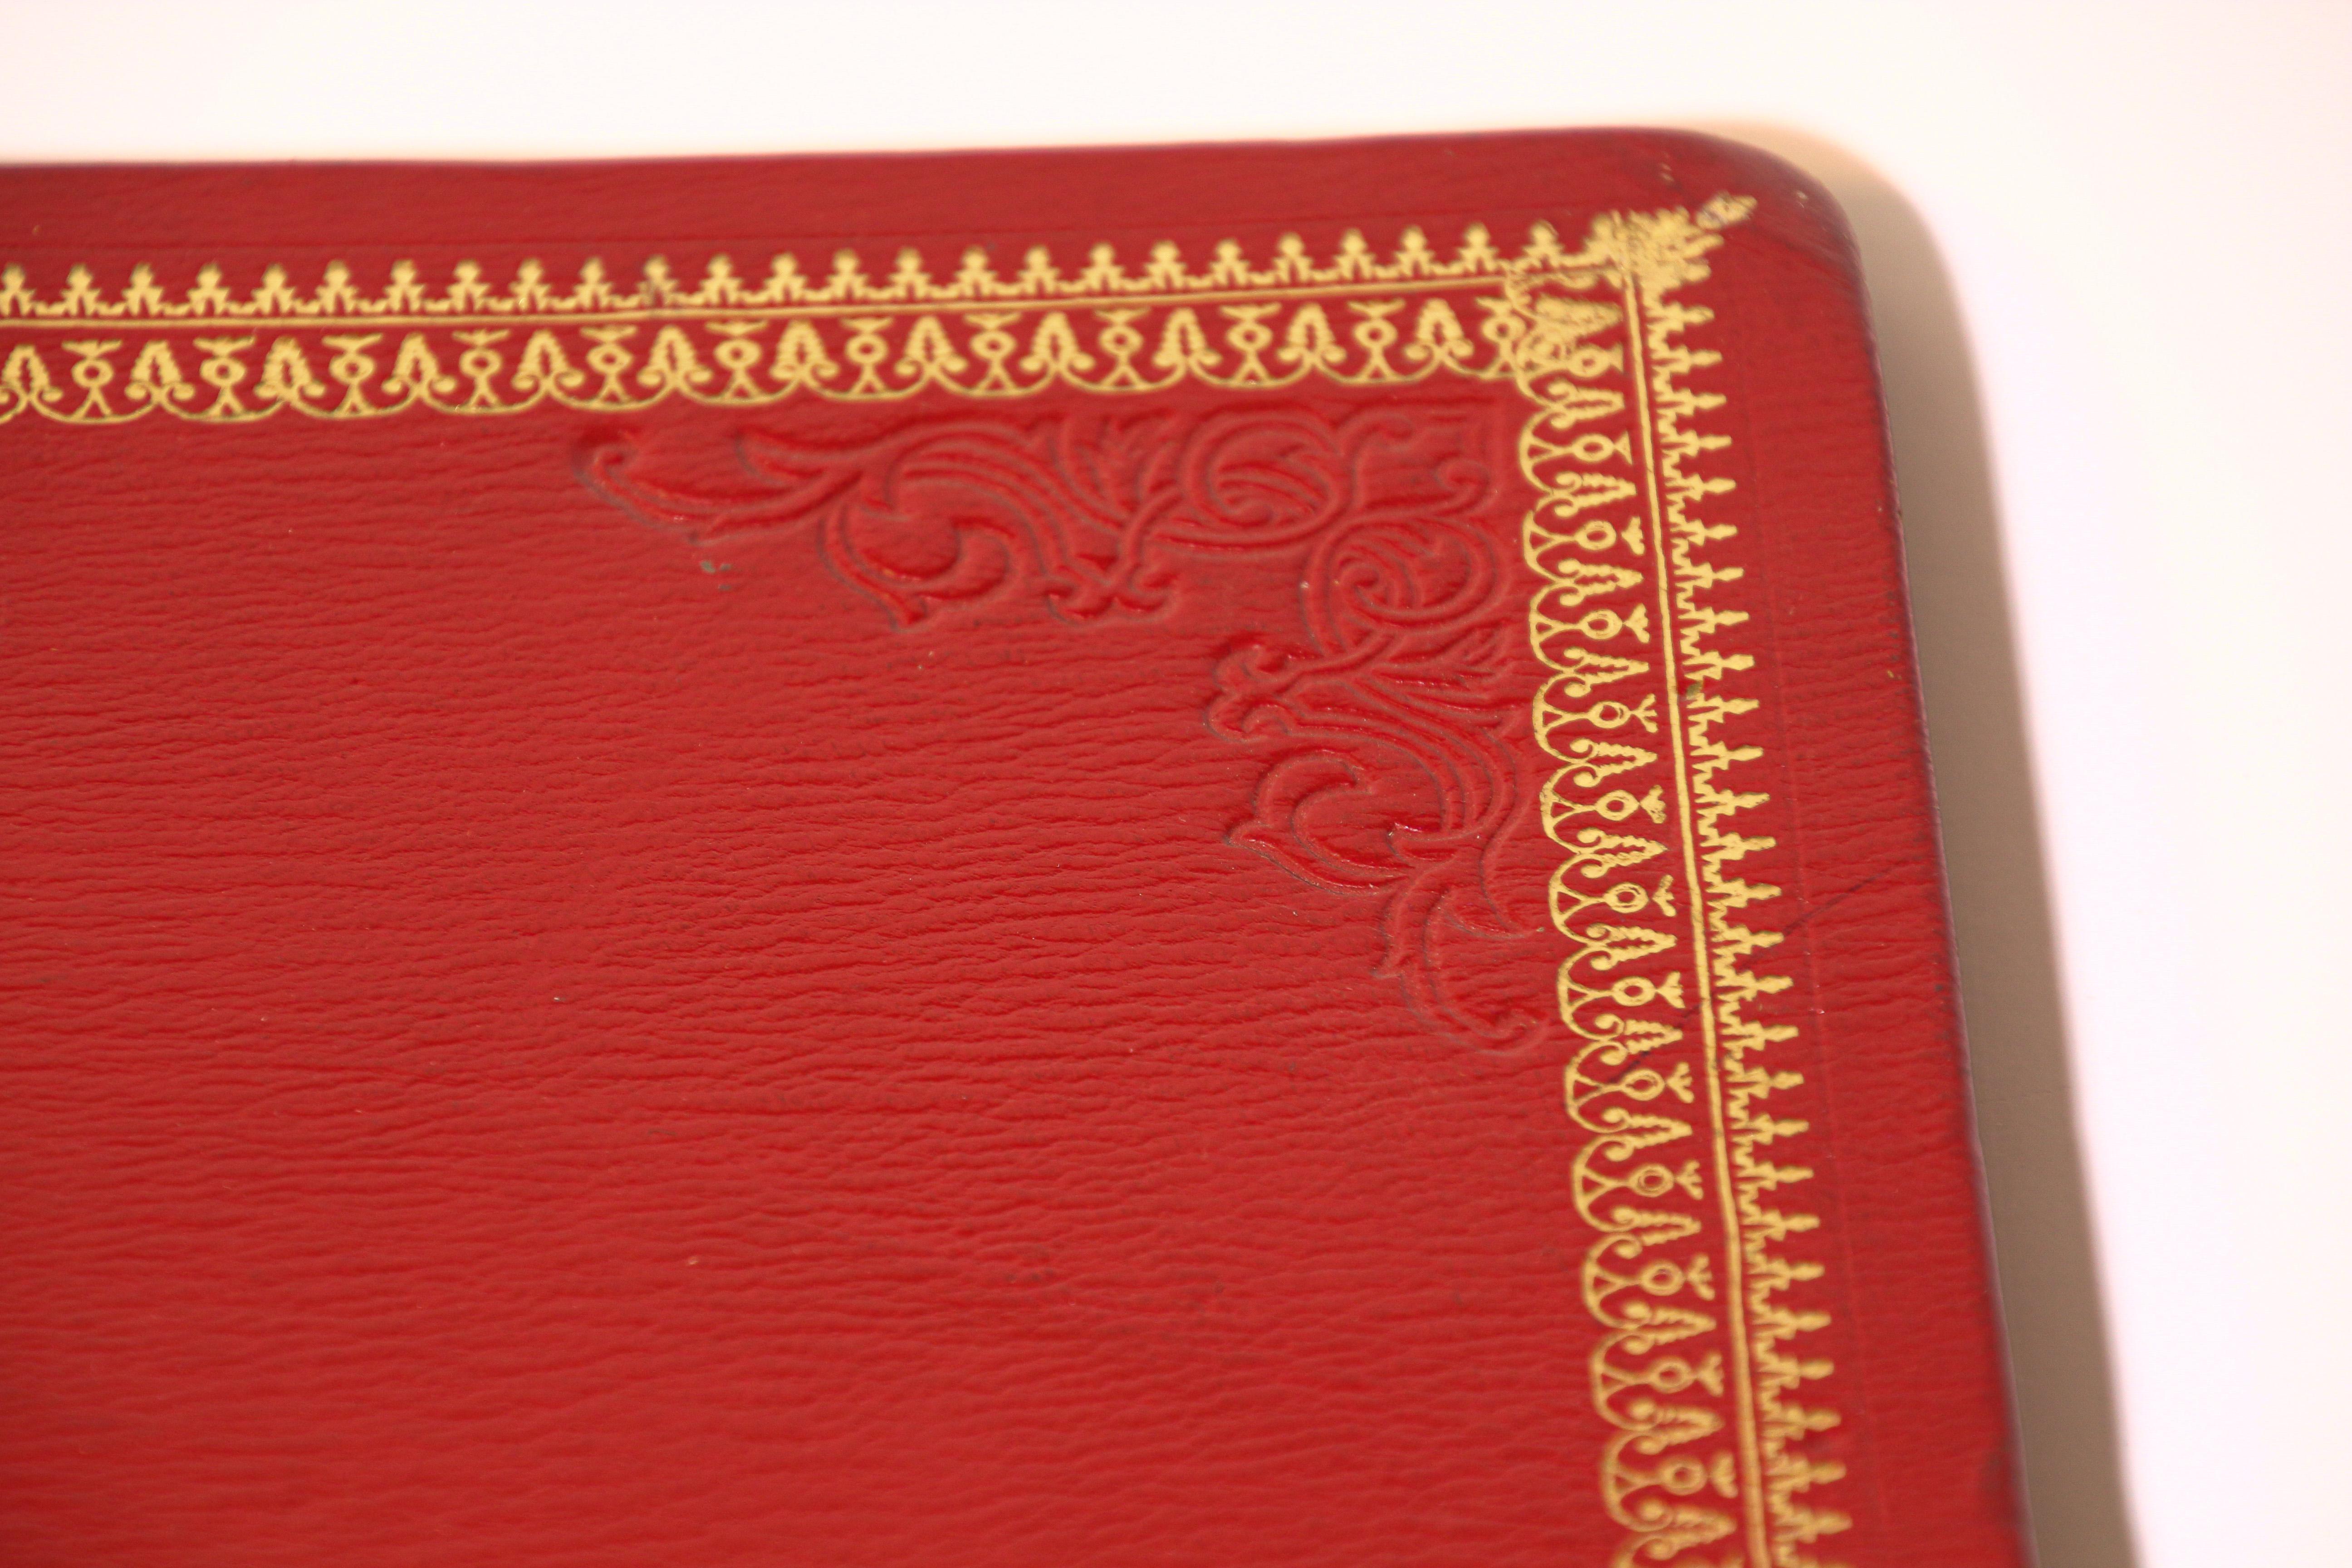 Vieux porte-documents en cuir gaufré marocain.
Portefeuille en cuir rouge vintage embossé avec un motif en or 22 carats.
Cuir fait main, estampillé de motifs en or 22 carats. 
La taille est de 14